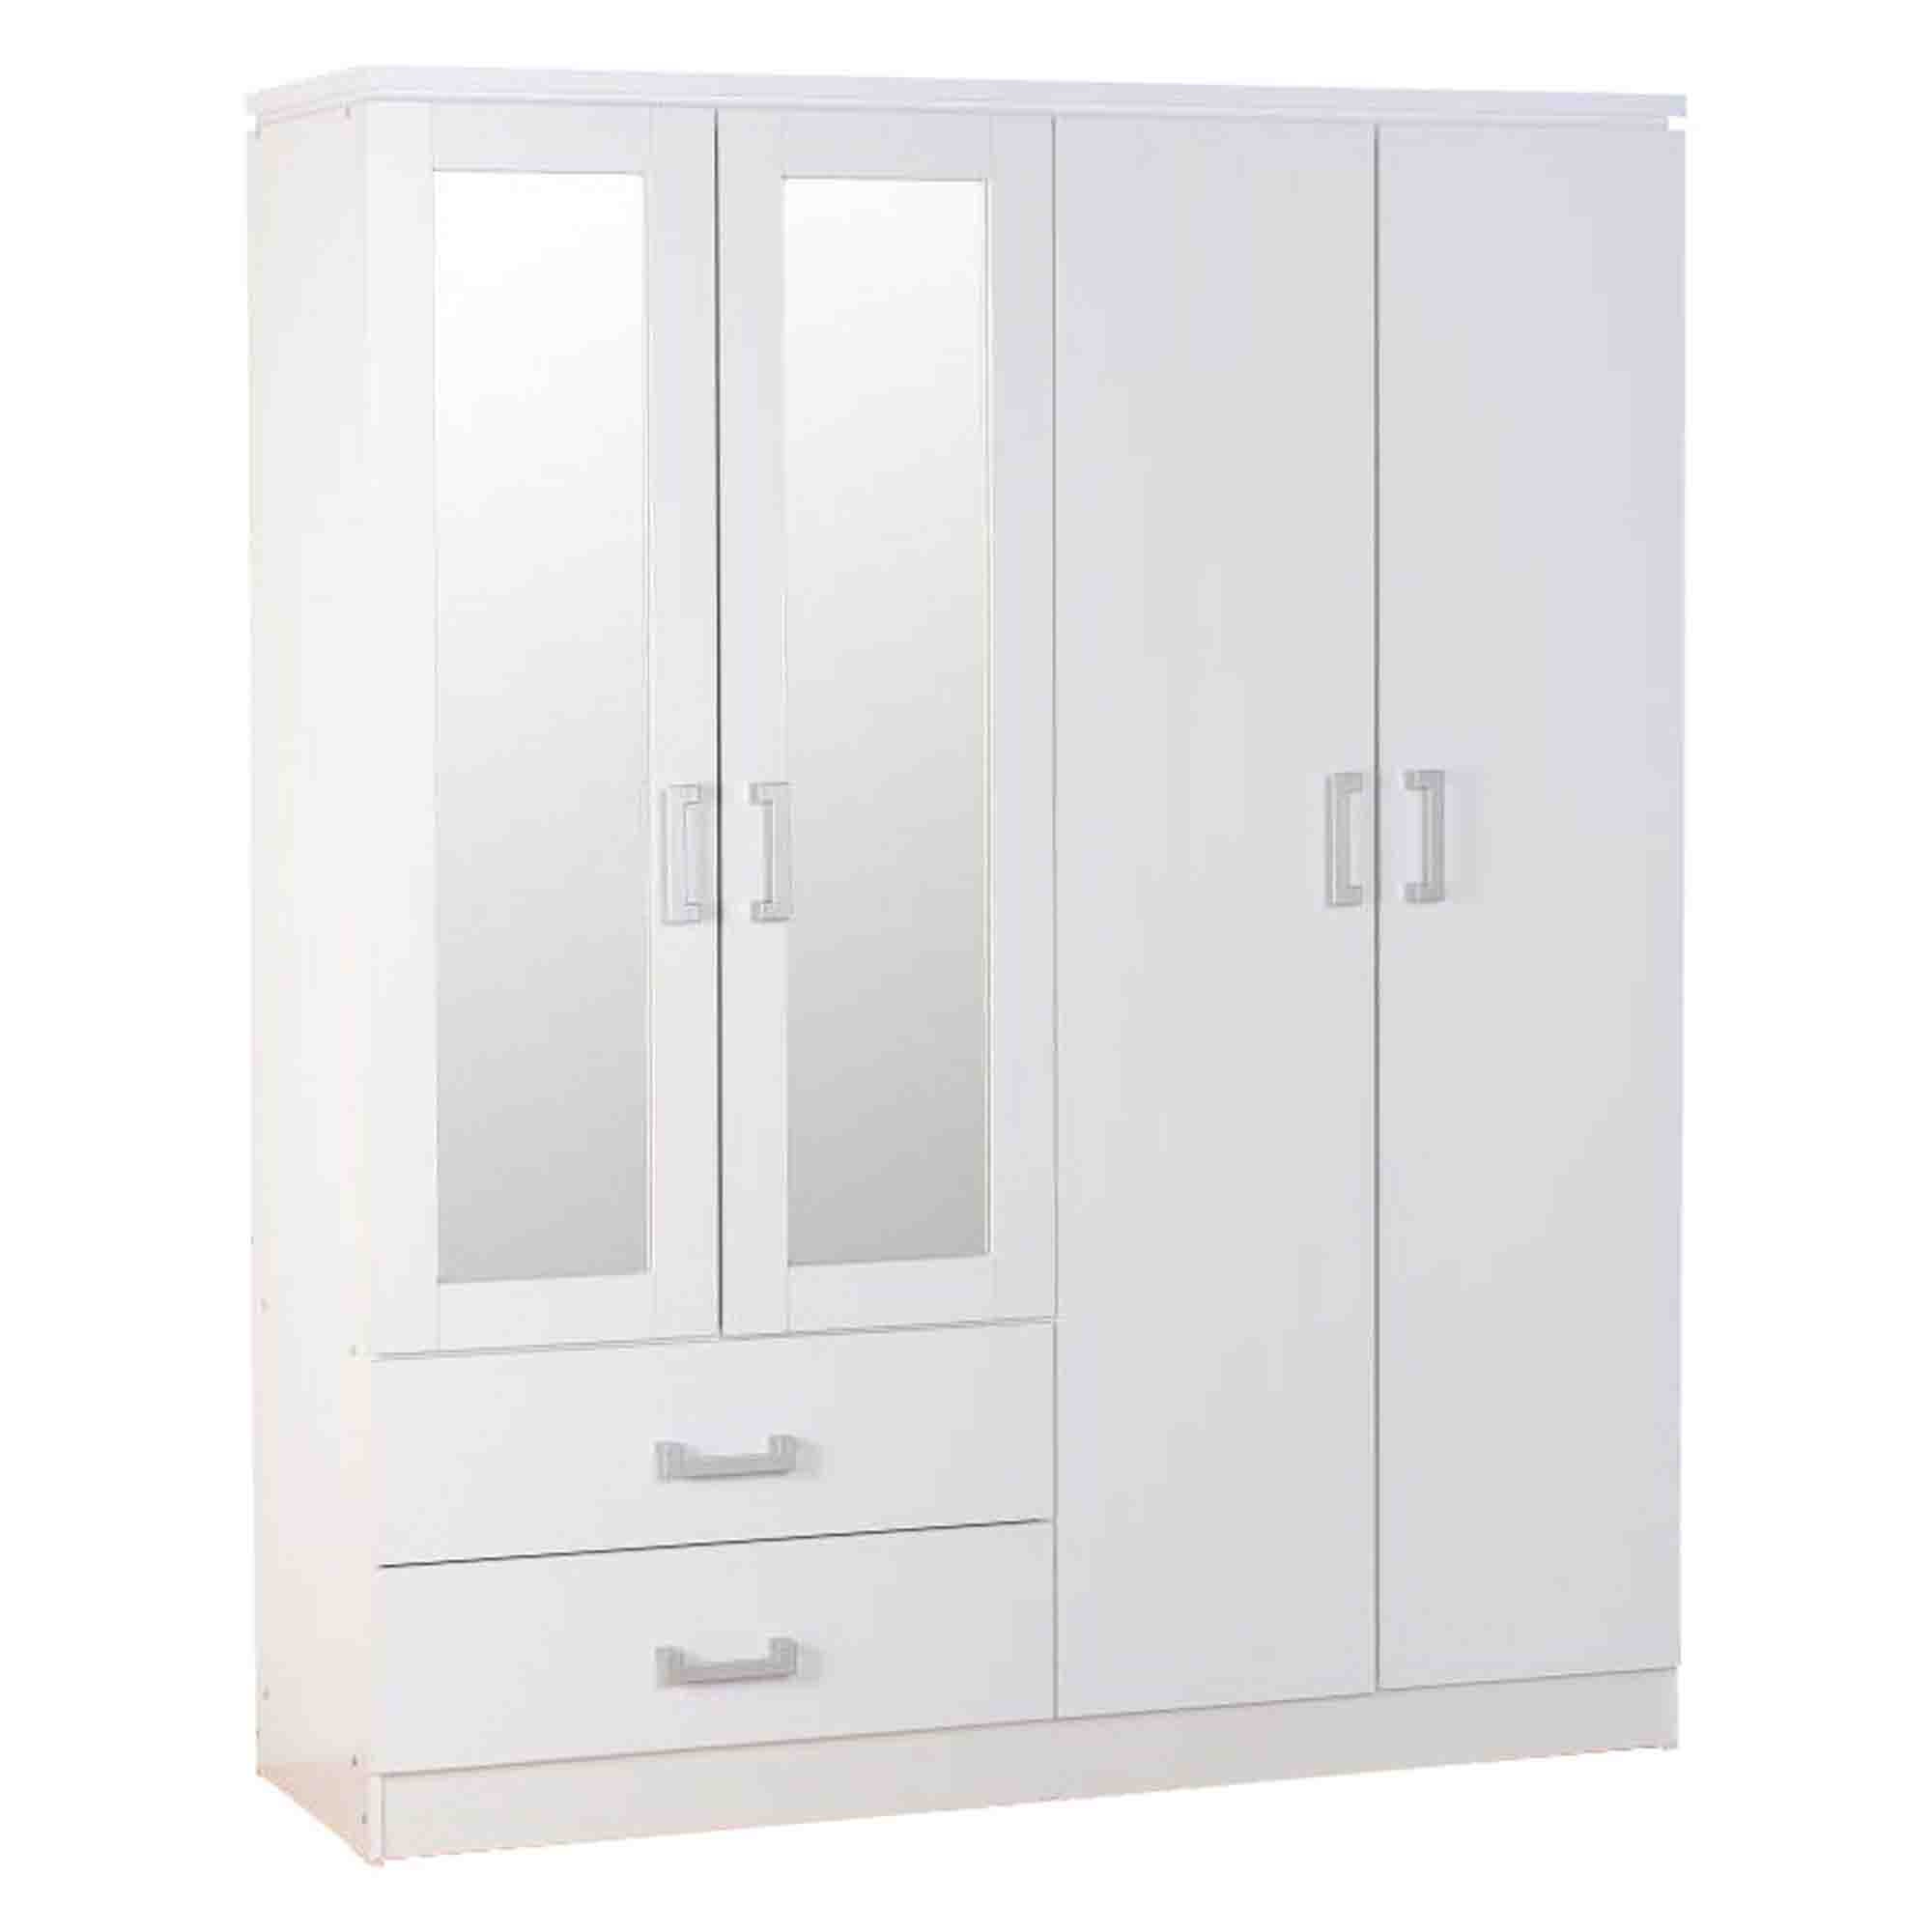 Charles 4 Door Wardrobe Mirrored White